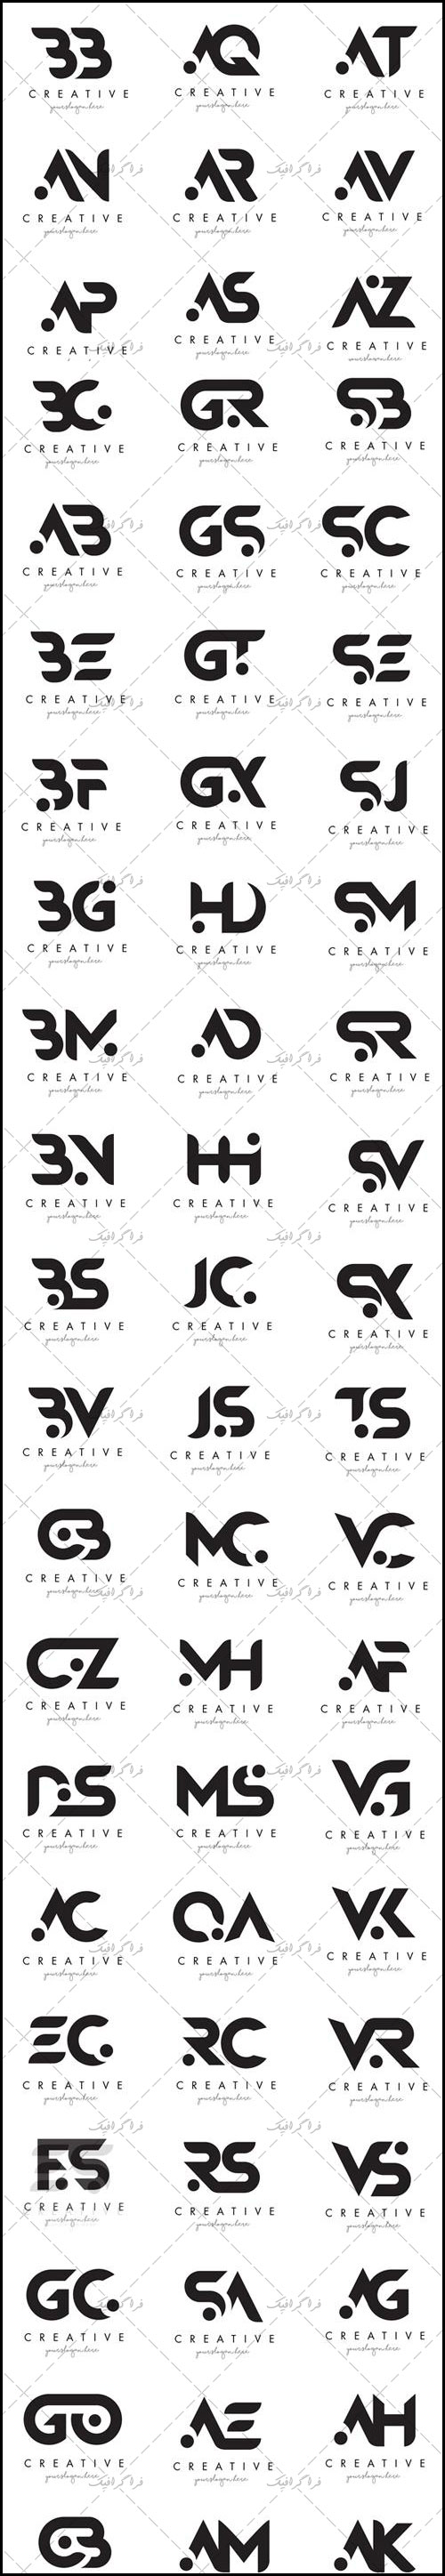 دانلود لوگو های حروف ترکیبی انگلیسی مدرن - لایه باز وکتور